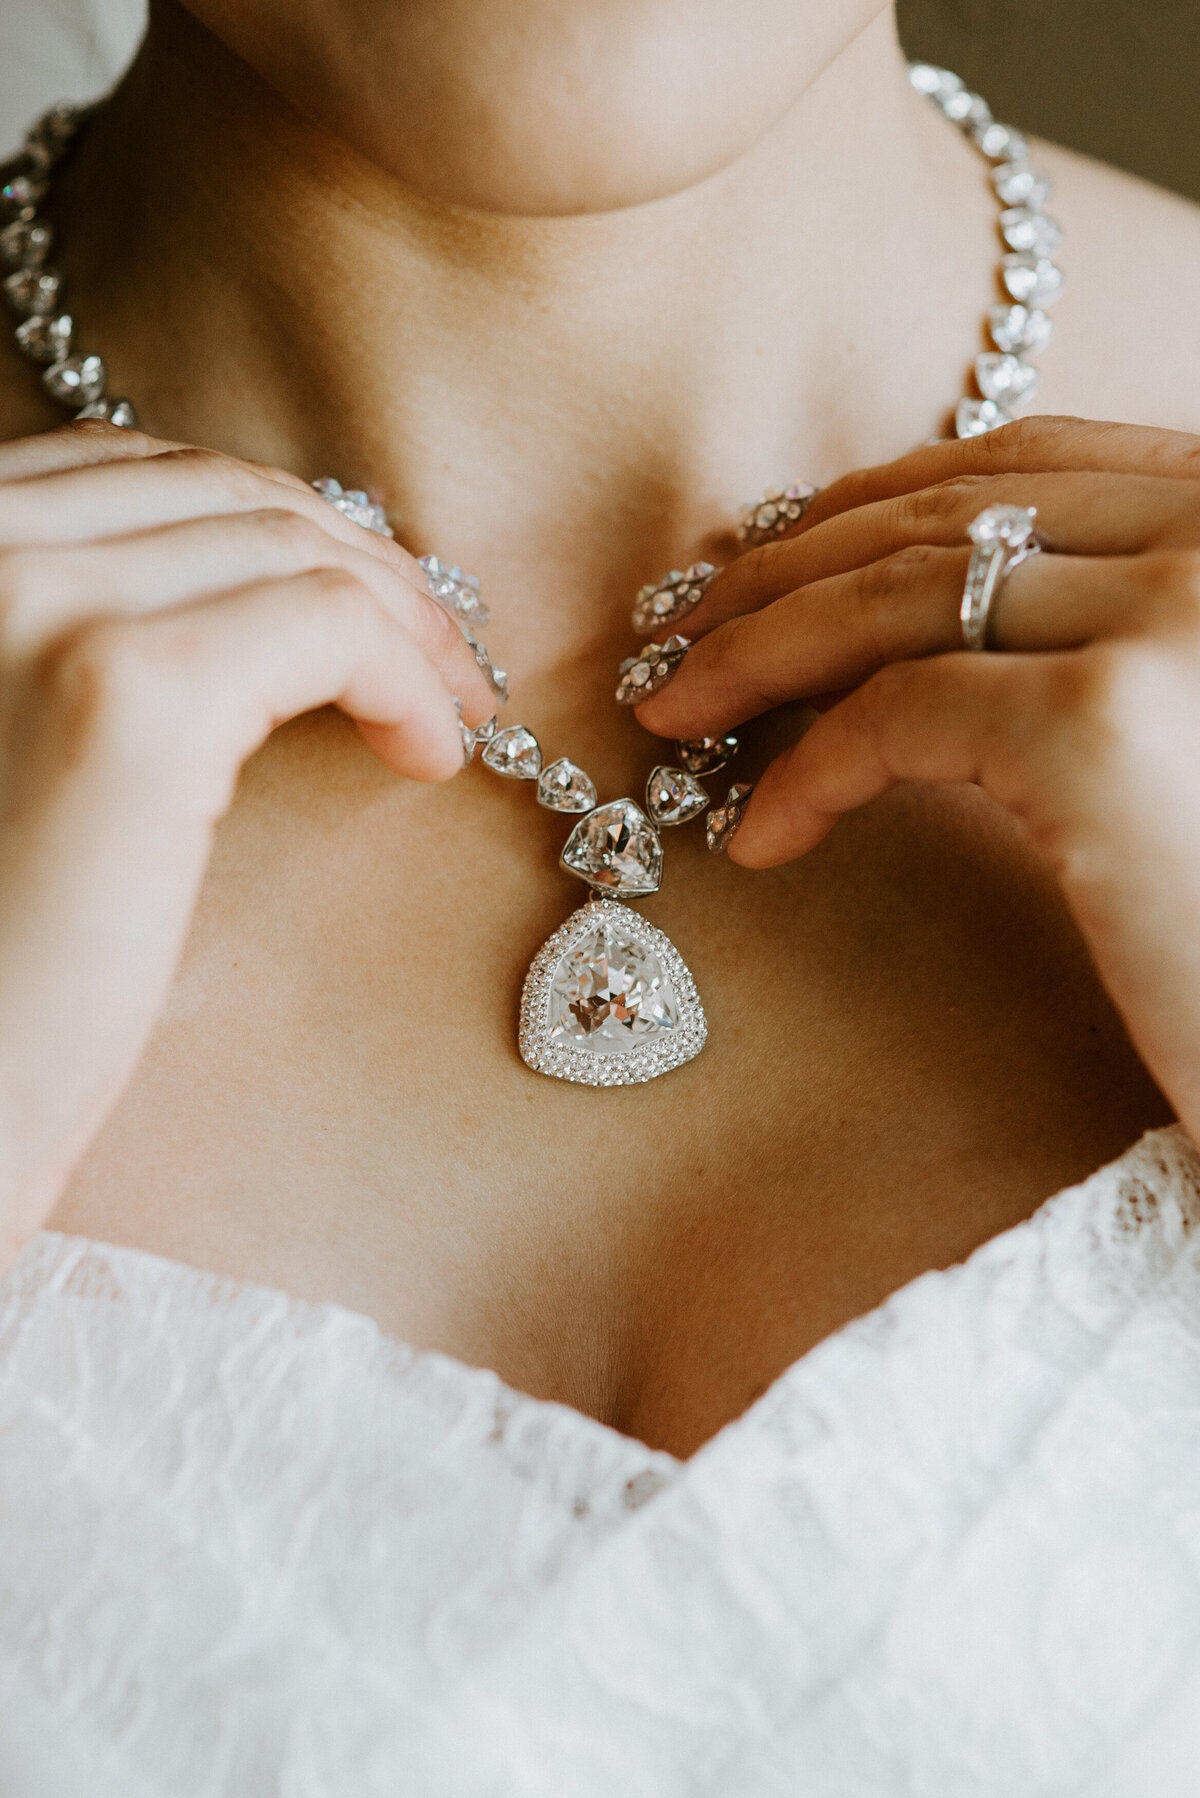 Luxury wedding jewellery and diamonds at Vancouver weddig